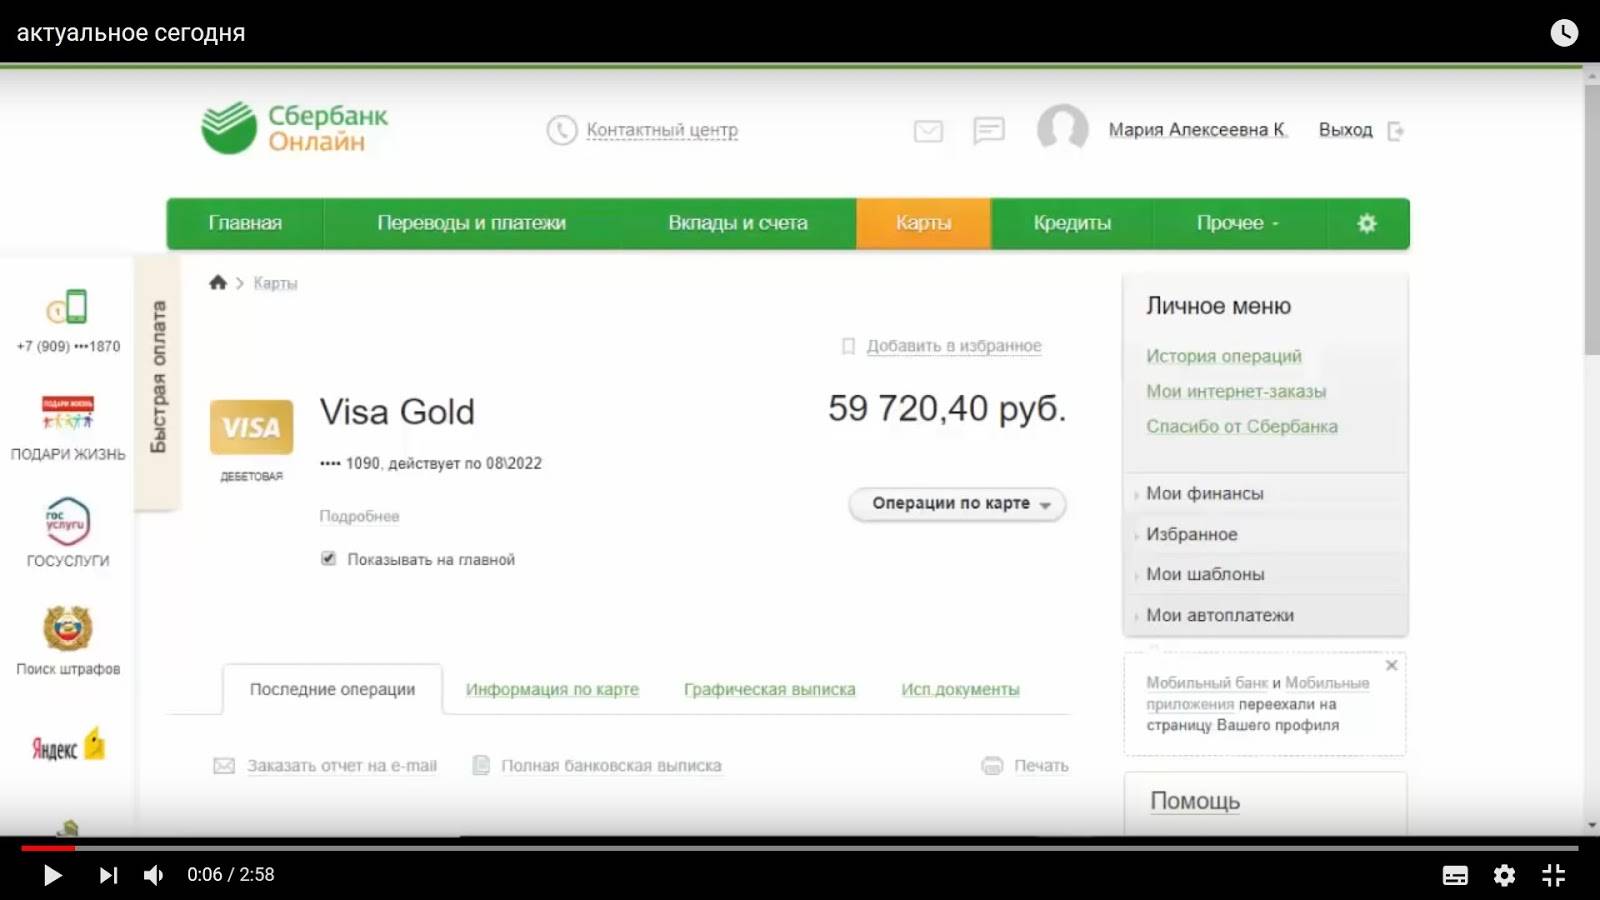 ​клиенты tele2 получат 5% годовых за мобильные накопления 18.10.2017 | банки.ру